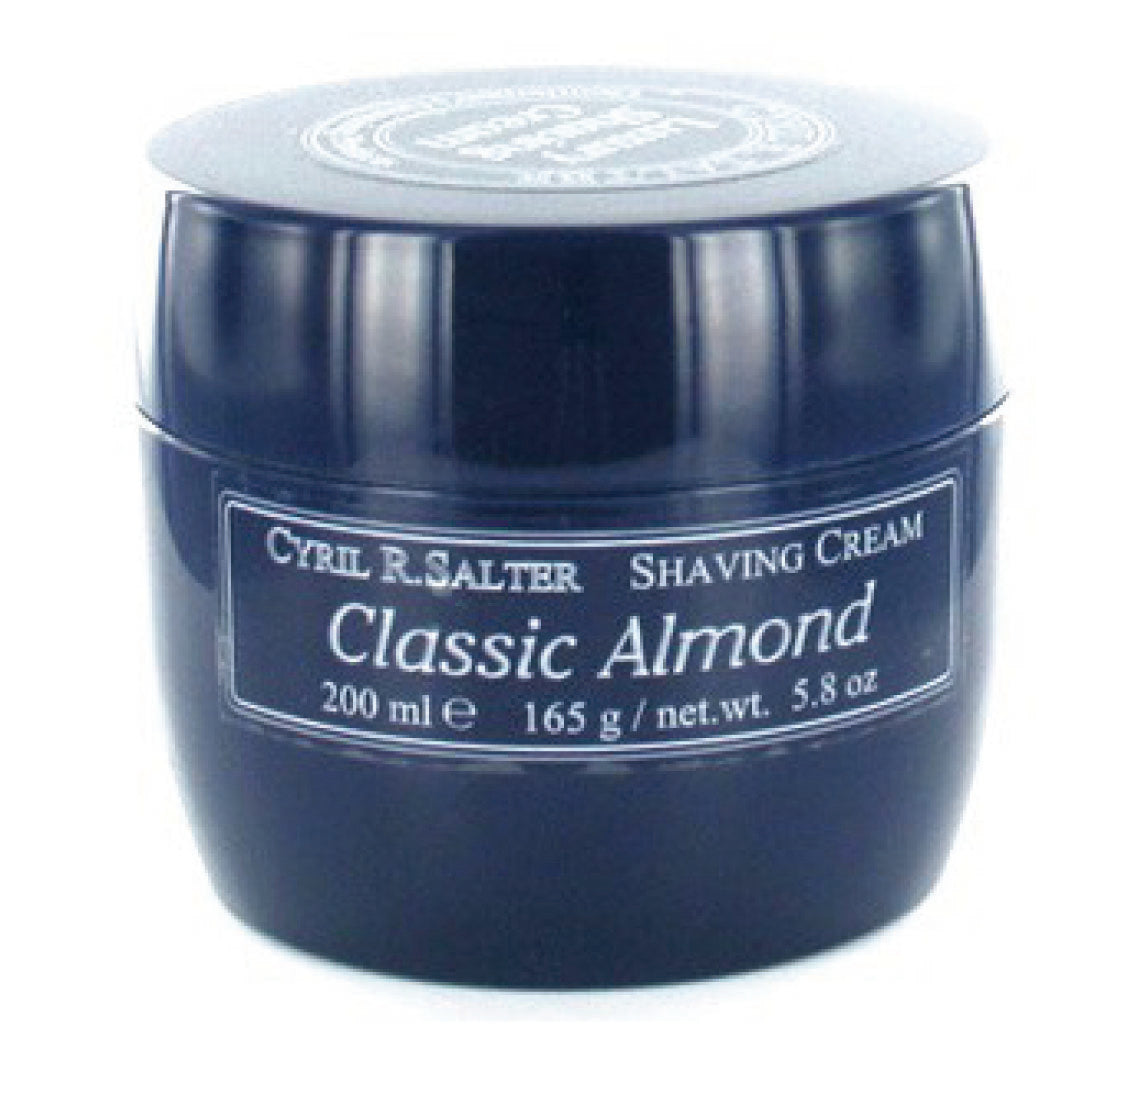 CLASSIC ALMOND - Shaving Cream